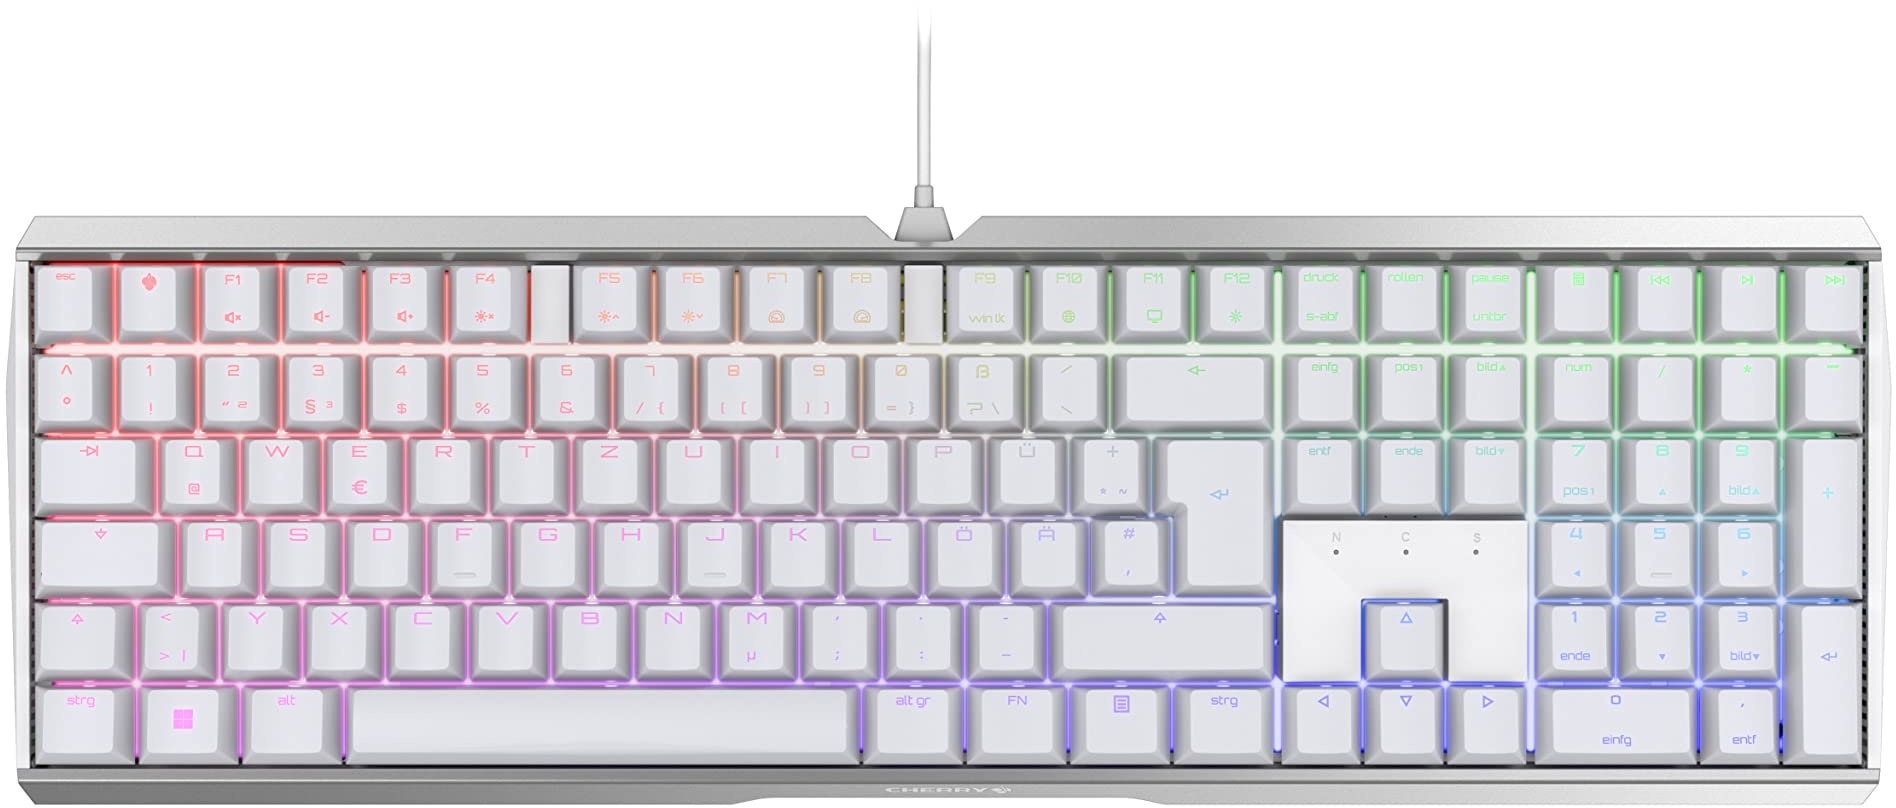 CHERRY MX BOARD 3.0 S, kabelgebundene Gaming-Tastatur mit RGB-Beleuchtung, Deutsches Layout (QWERTZ), MX BLACK Switches, Weiß